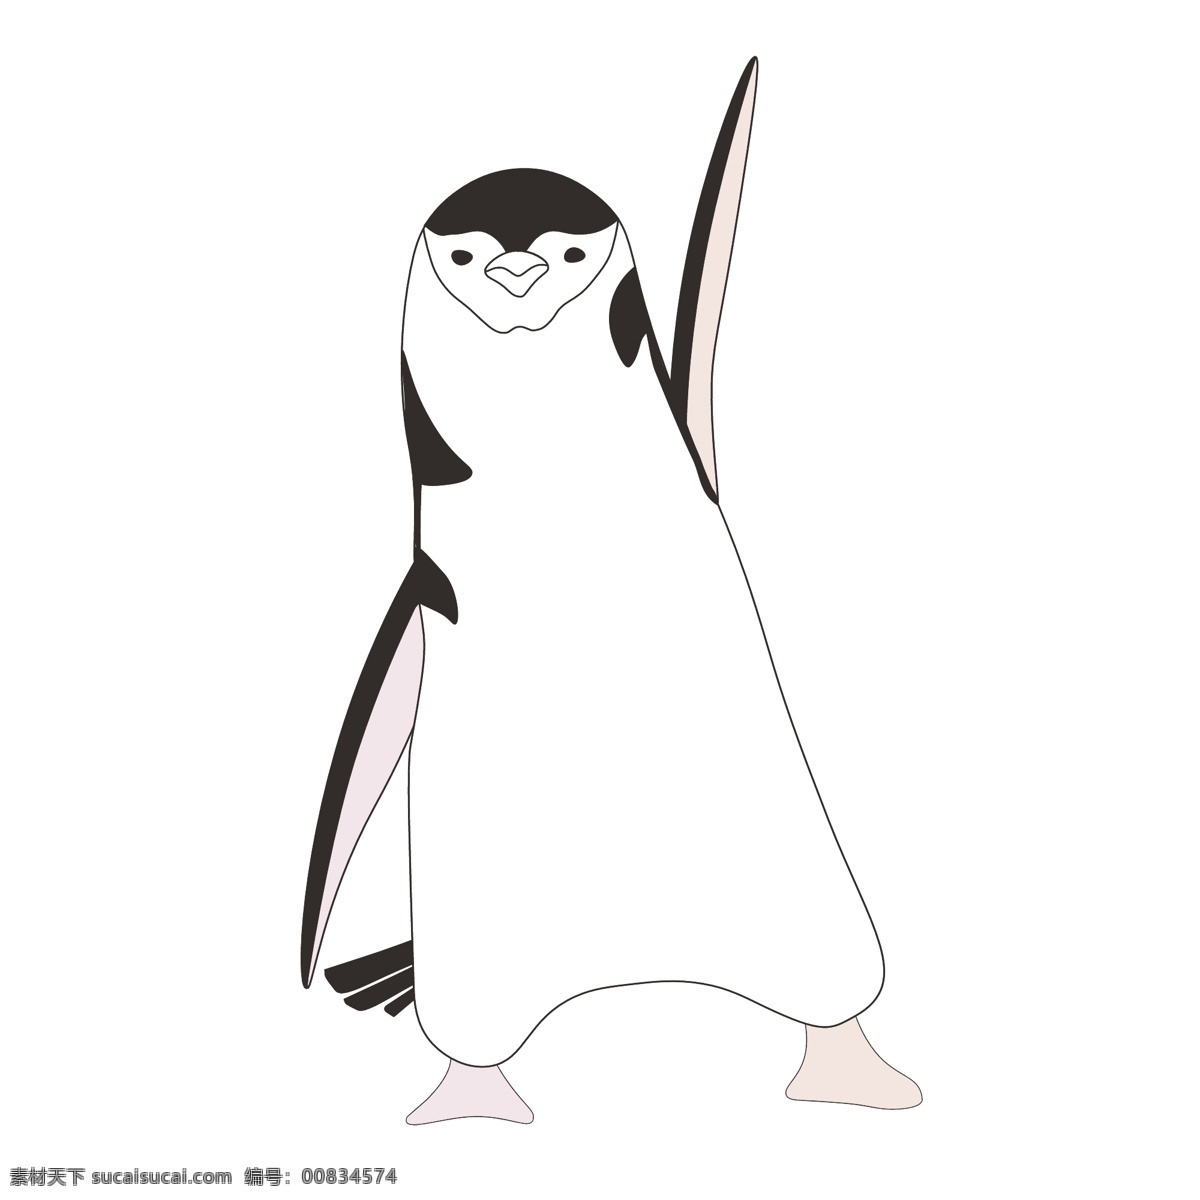 企鹅 简 笔画 卡通企鹅 手绘企鹅插画 手绘插画 企鹅素材 企鹅元素 可爱企鹅 矢量卡通企鹅 卡通矢量企鹅 小企鹅 企鹅简笔画 卡通素材 矢量素材 矢量企鹅 手绘企鹅 企鹅插画 可爱卡通 可爱卡通企鹅 漫画企鹅 卡通设计